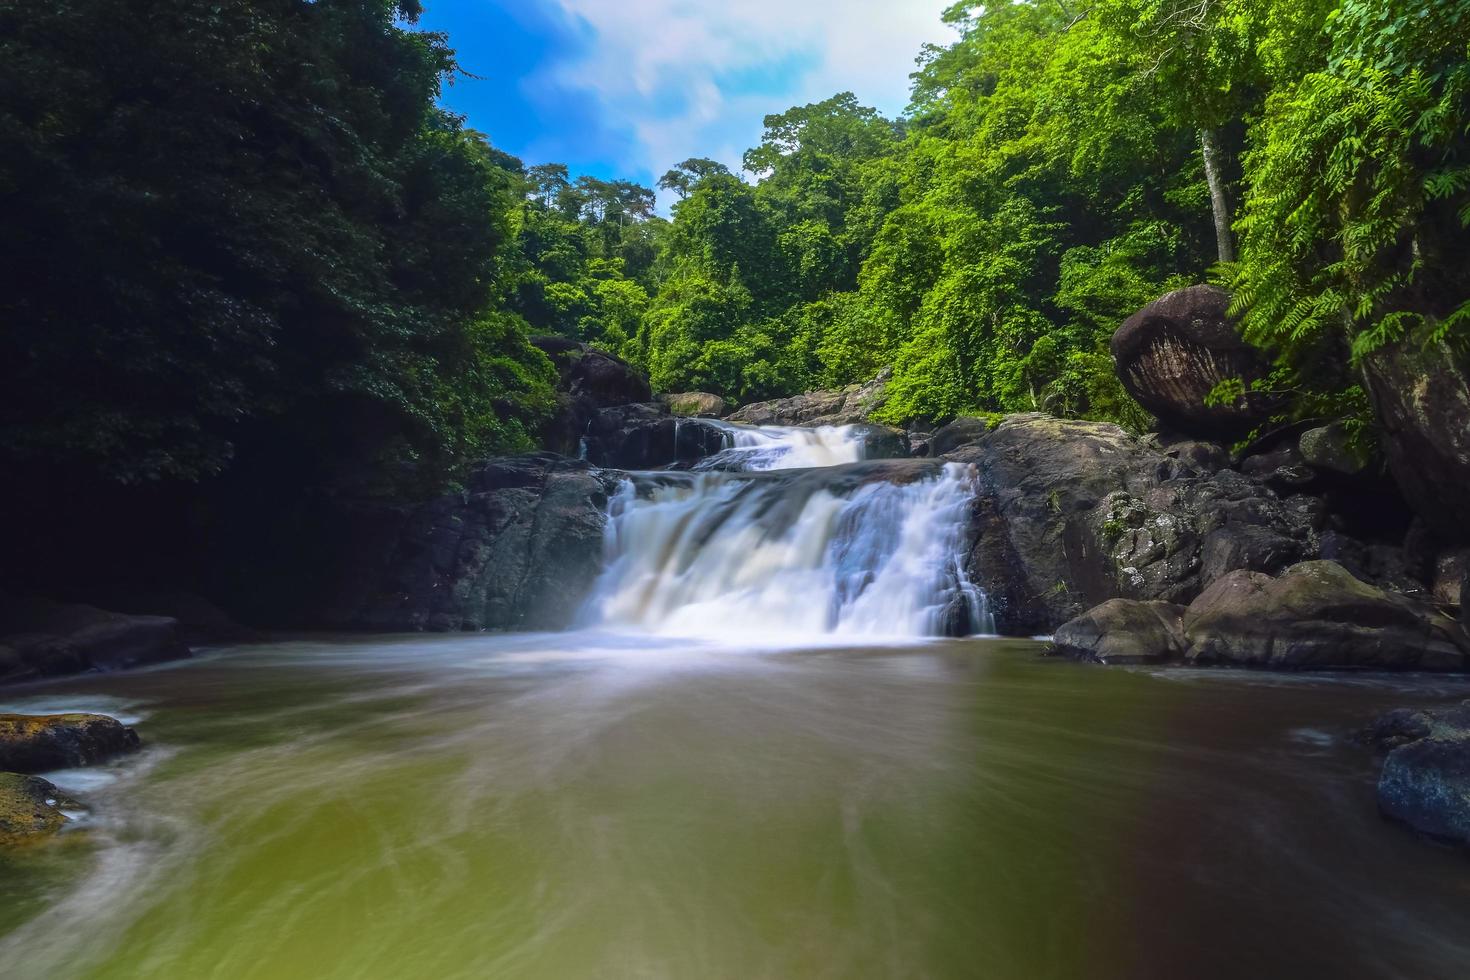 Nang Rong Wasserfall in Thailand foto